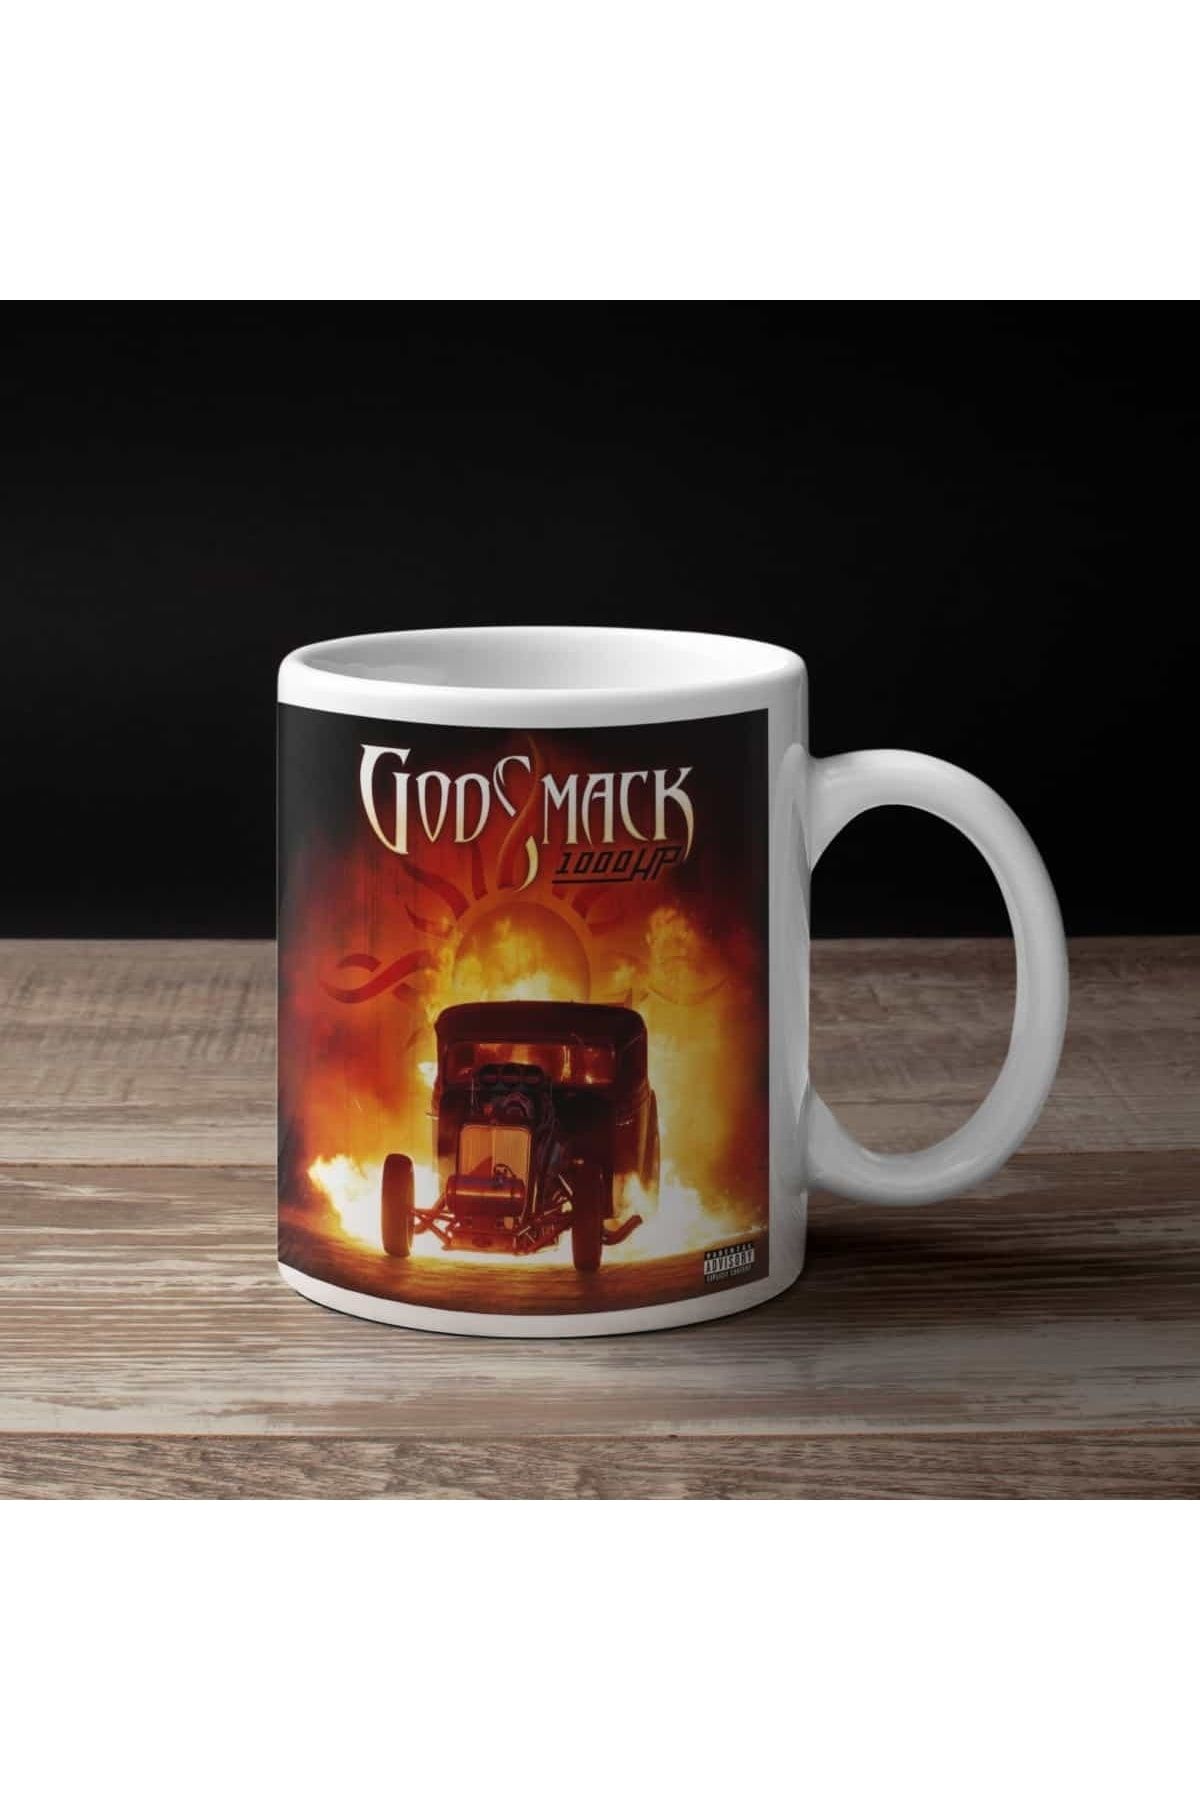 Mugs Heaven Godsmack Kahve Kupası, Godsmack 1000hp Baskılı Kupa